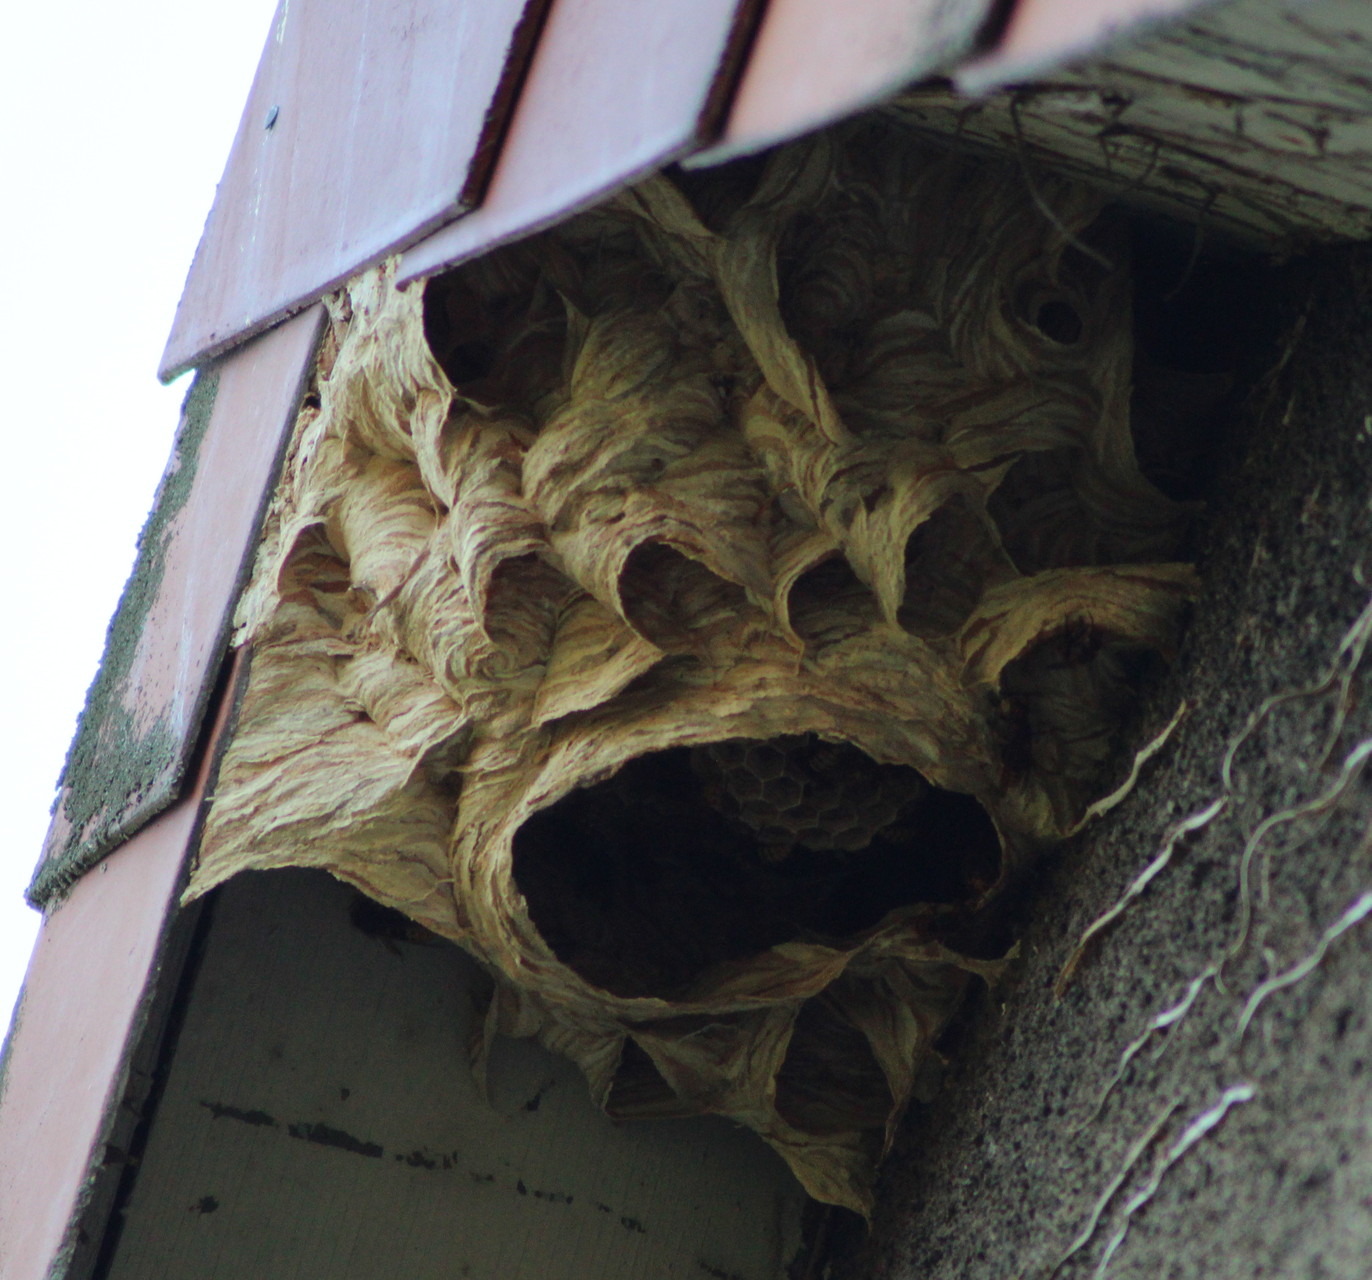 Na geht doch!  Unterm Dach wohnen die Hornissen und unten im Garten die Bienen.